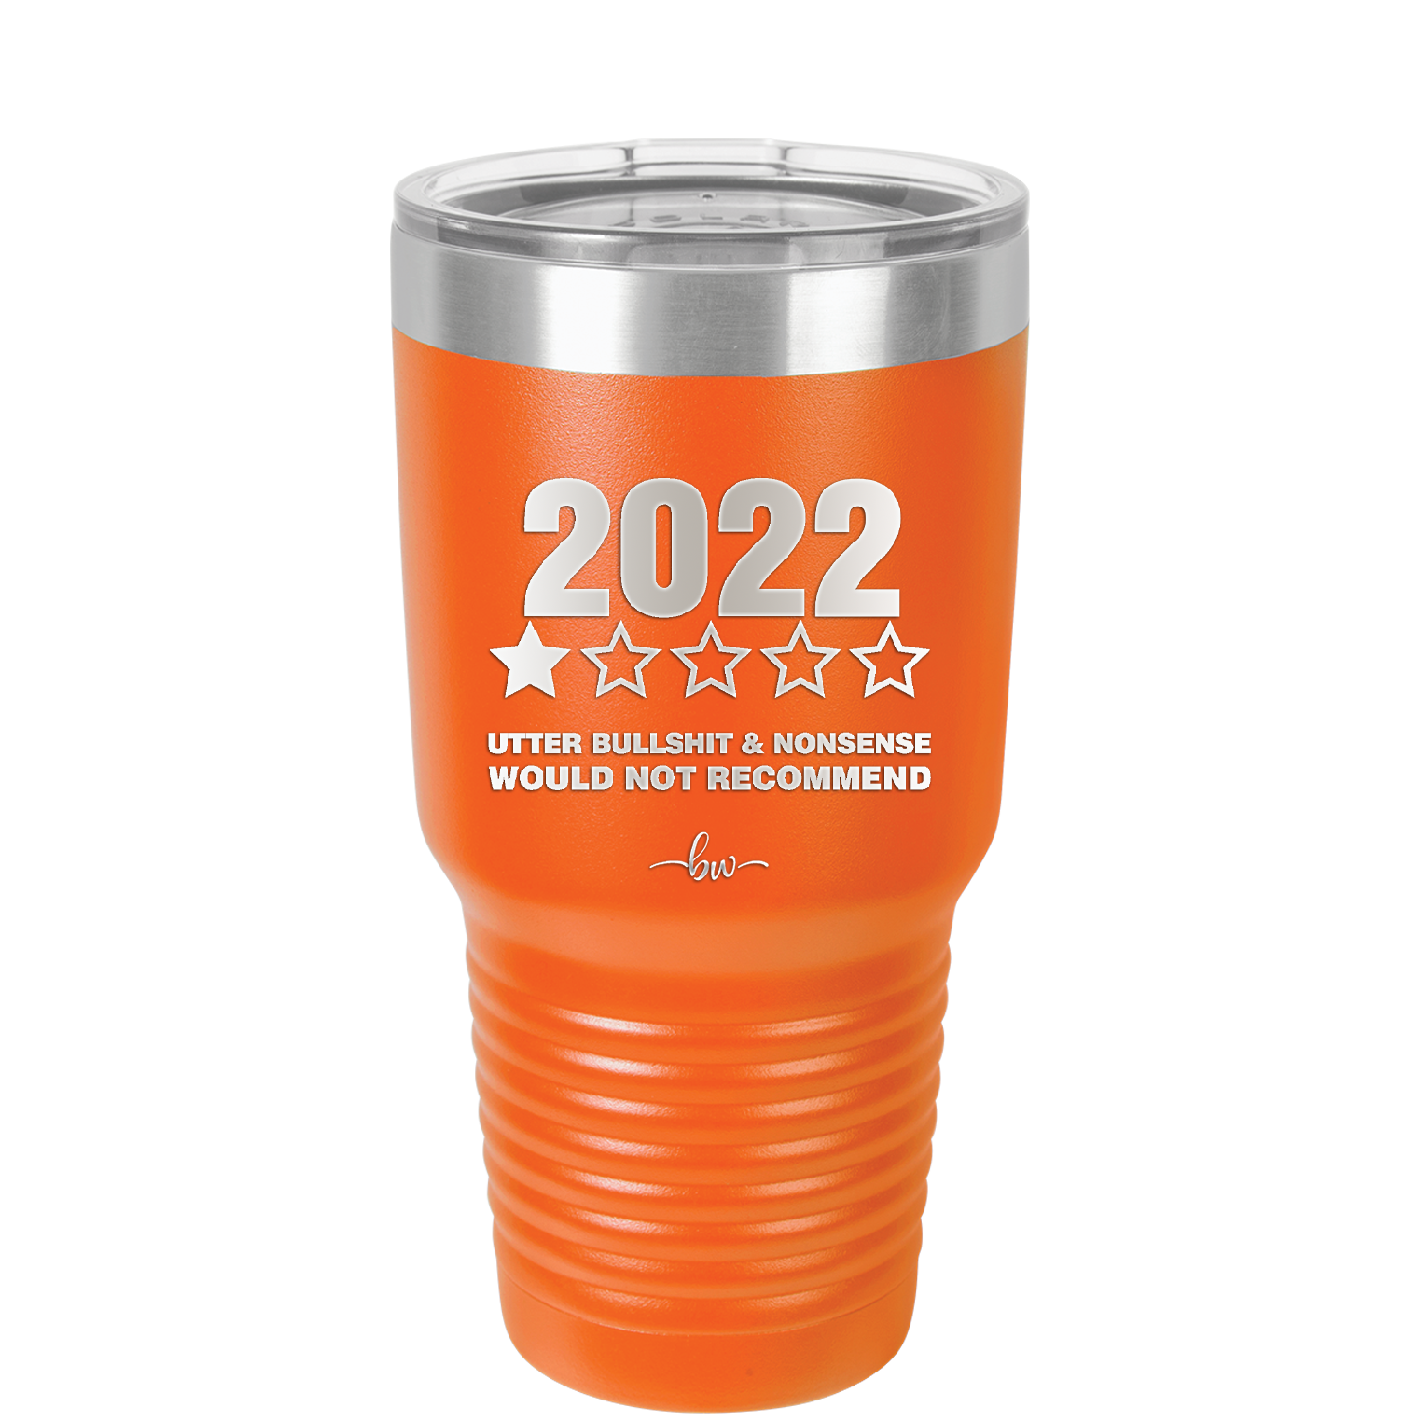 30 oz 2022 utter bullshitt and nonsense would not recommend- orange